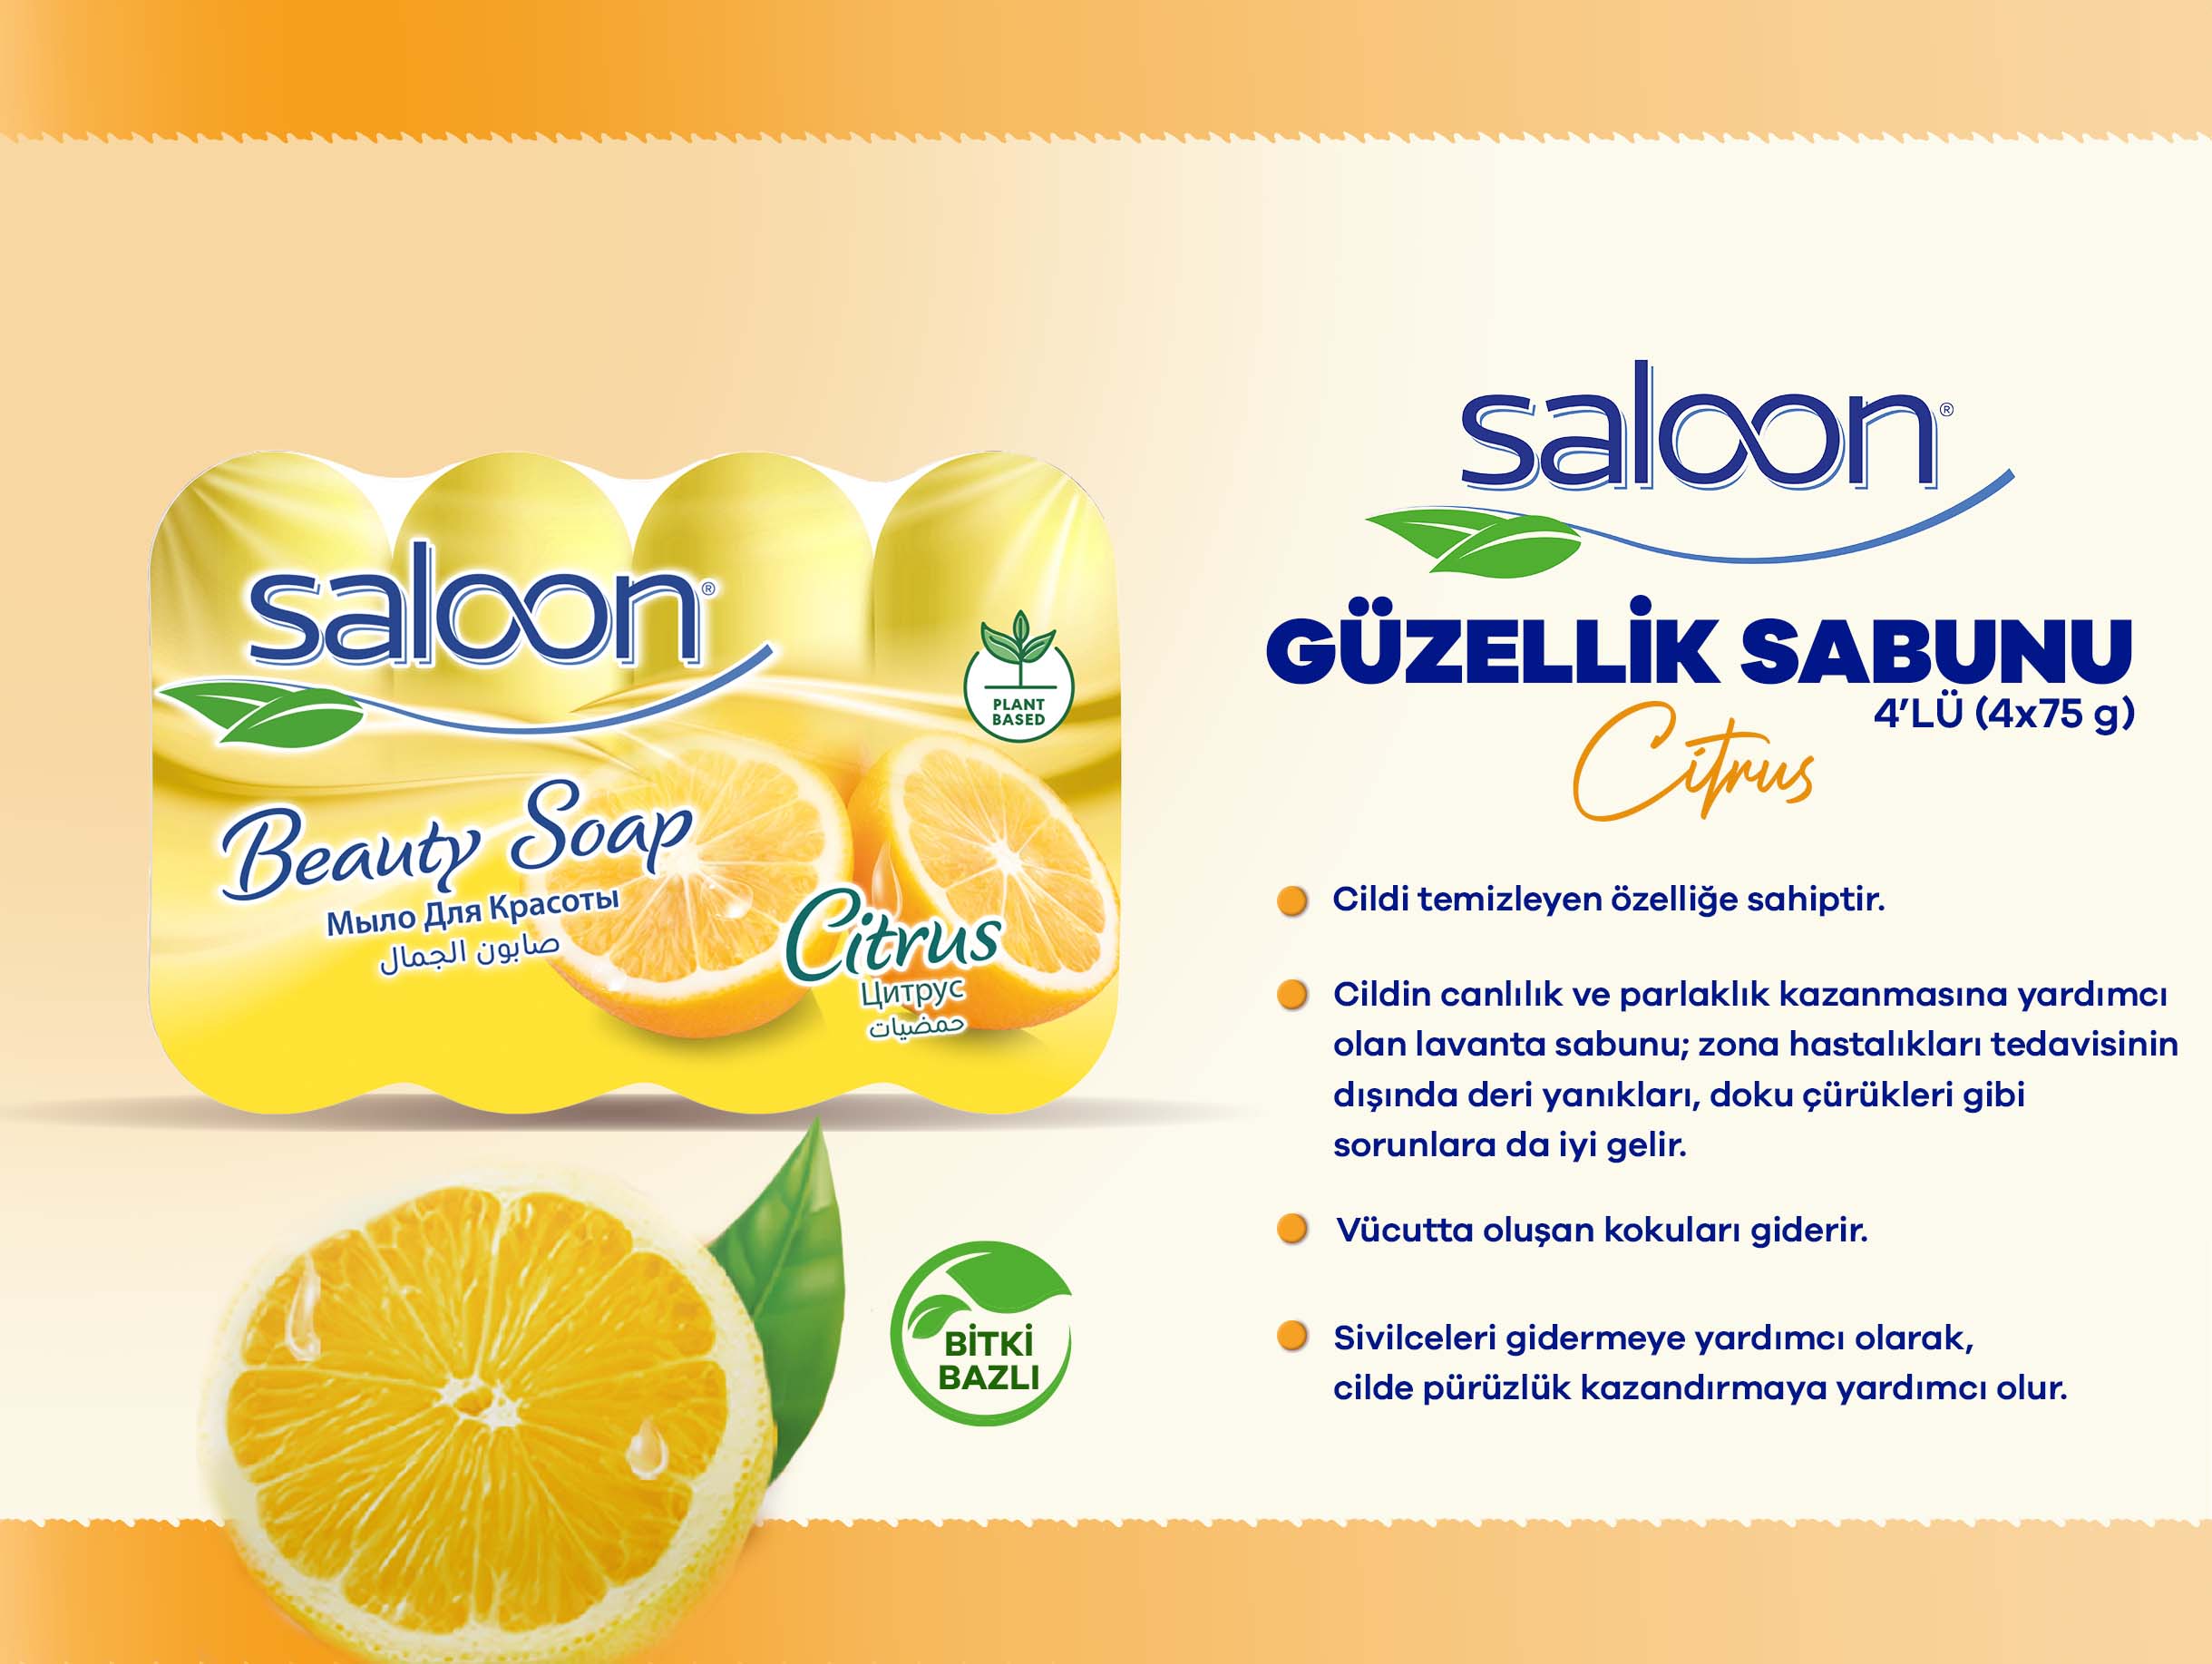 Saloon Güzellik Sabunu Citrus 4’LÜ (4x75 g)_.jpg (233 KB)